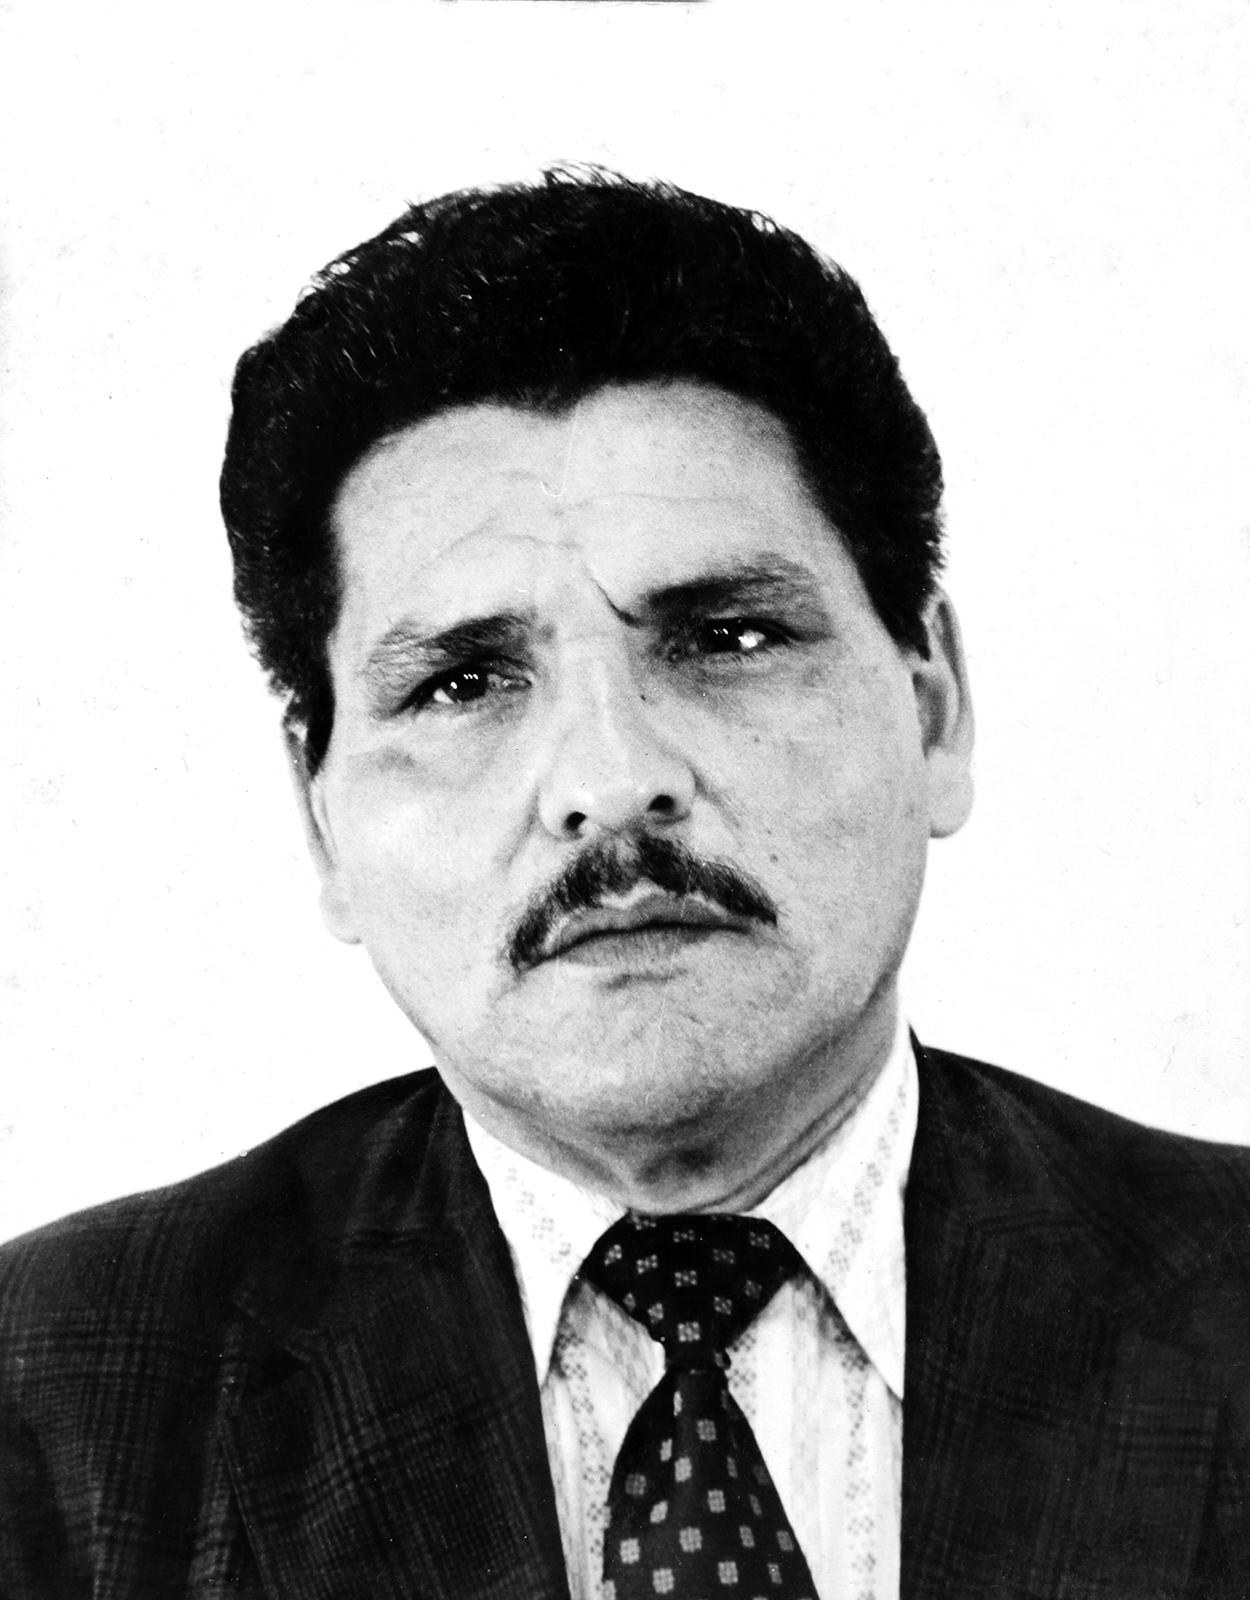 Primer Oficial de OIJ en Morir - Capitan Carlos Luis Rodriguez Muñoz 12-06-1976